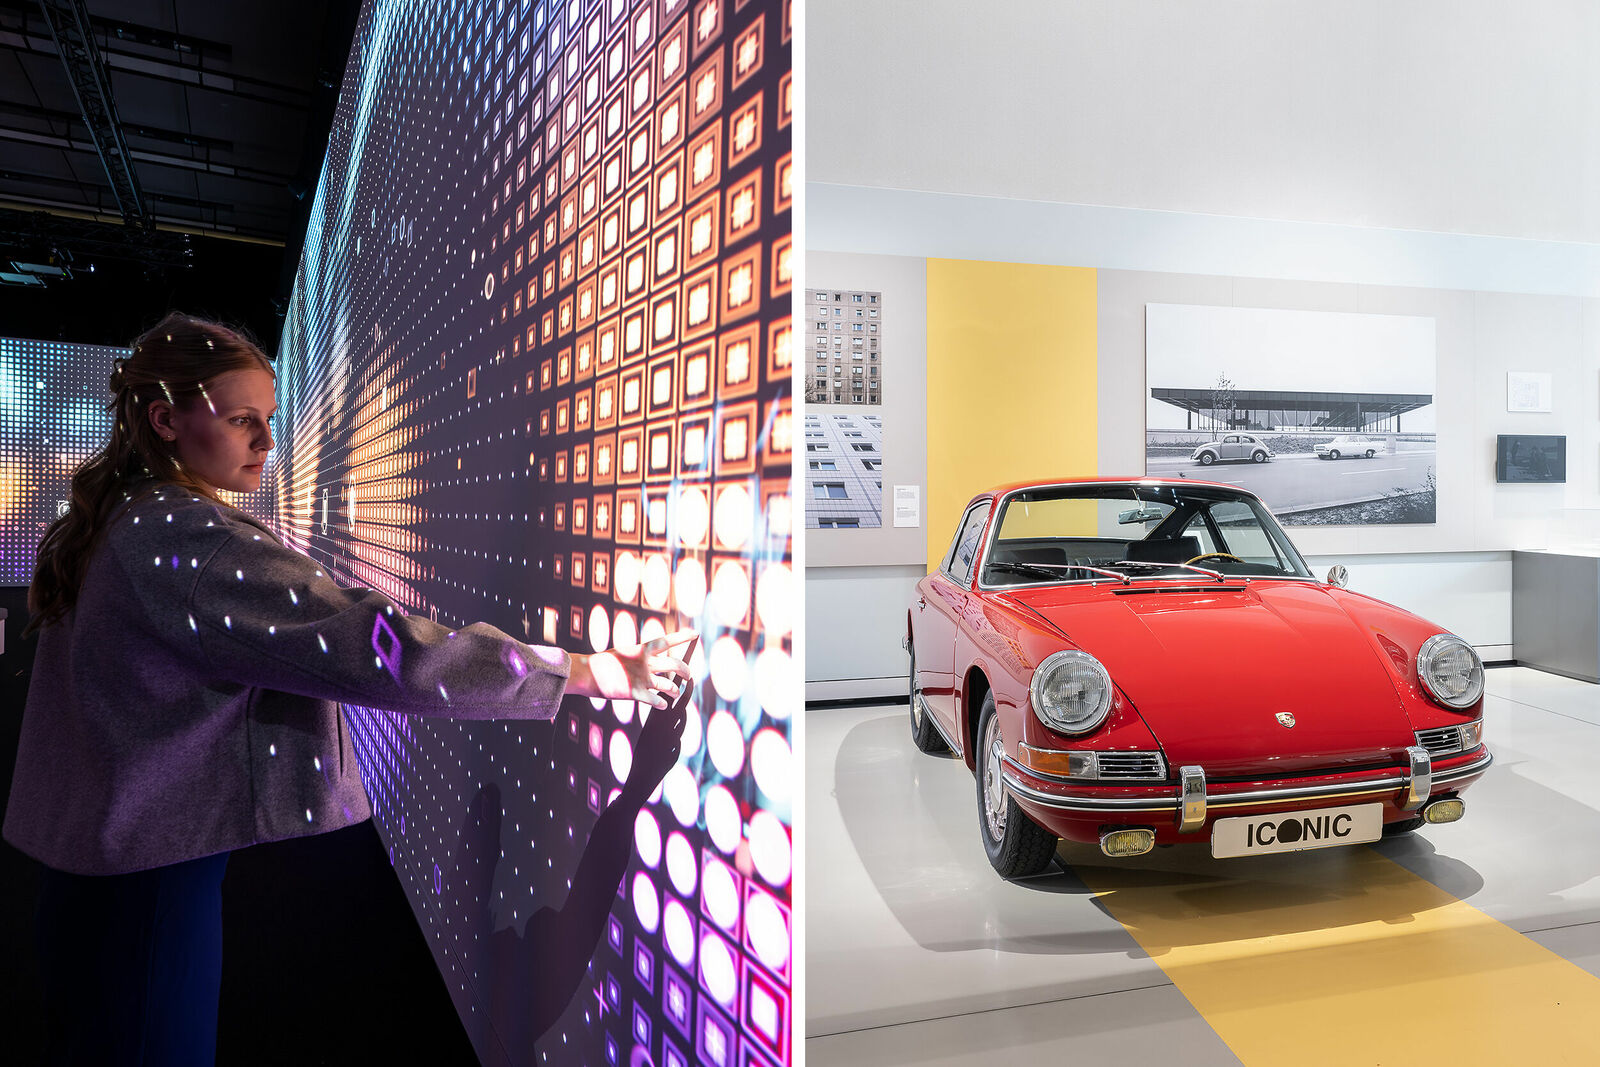 Eine Person interagiert mit einem Wanddisplay, das ein buntes Muster von leuchtenden Quadraten zeigt. Daneben ein historisches Porsche Fahrzeug.